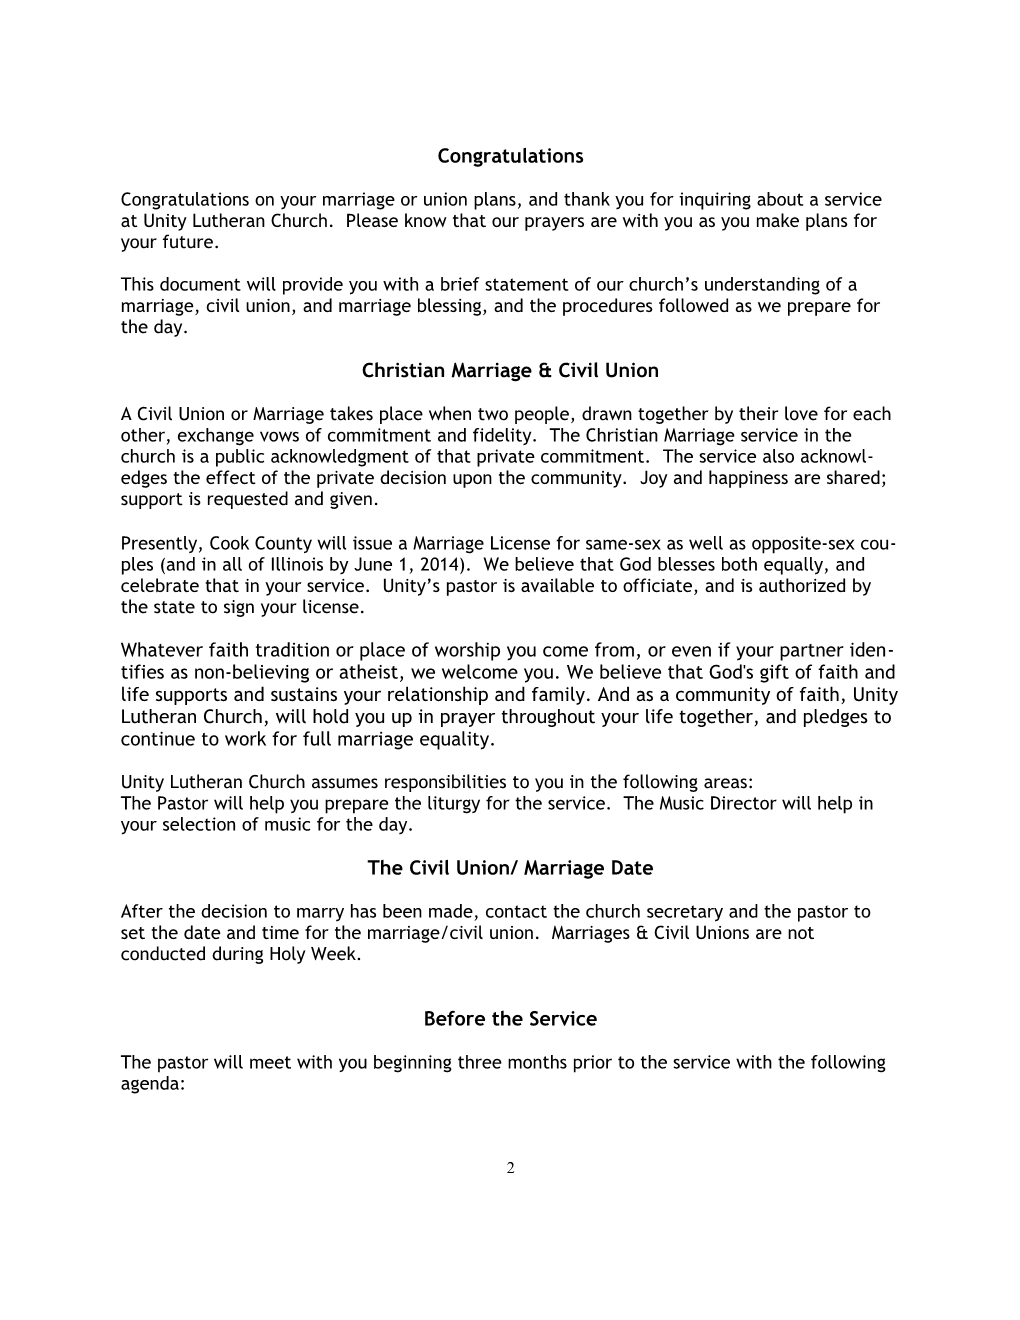 Marriage & Civil Union Services